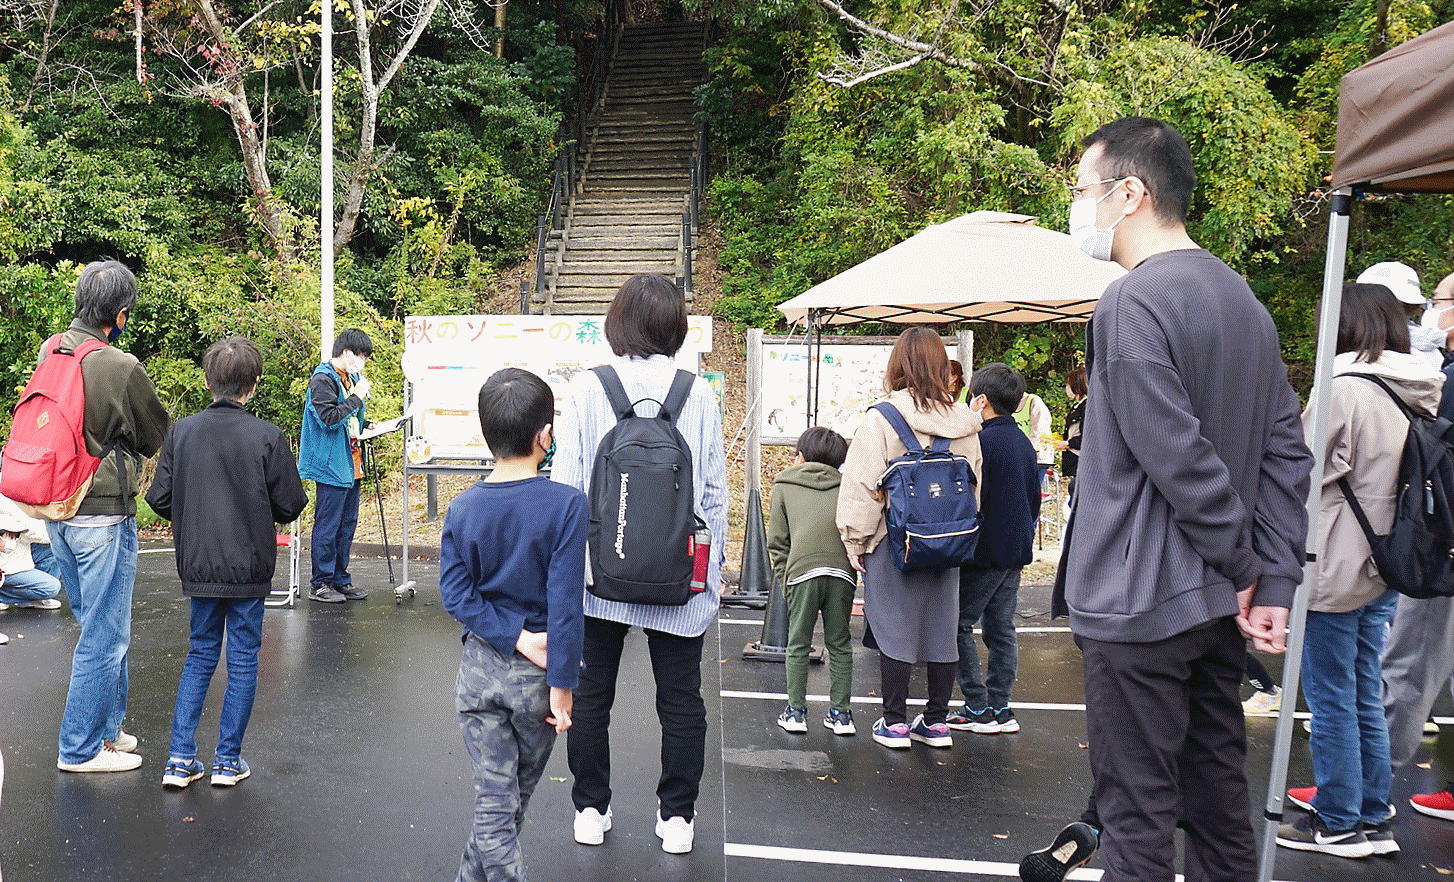 صورة فوتوغرافية تُظهر فعالية للتوعية البيئية أقيمت في غابة داخل موقع كوهدا في اليابان